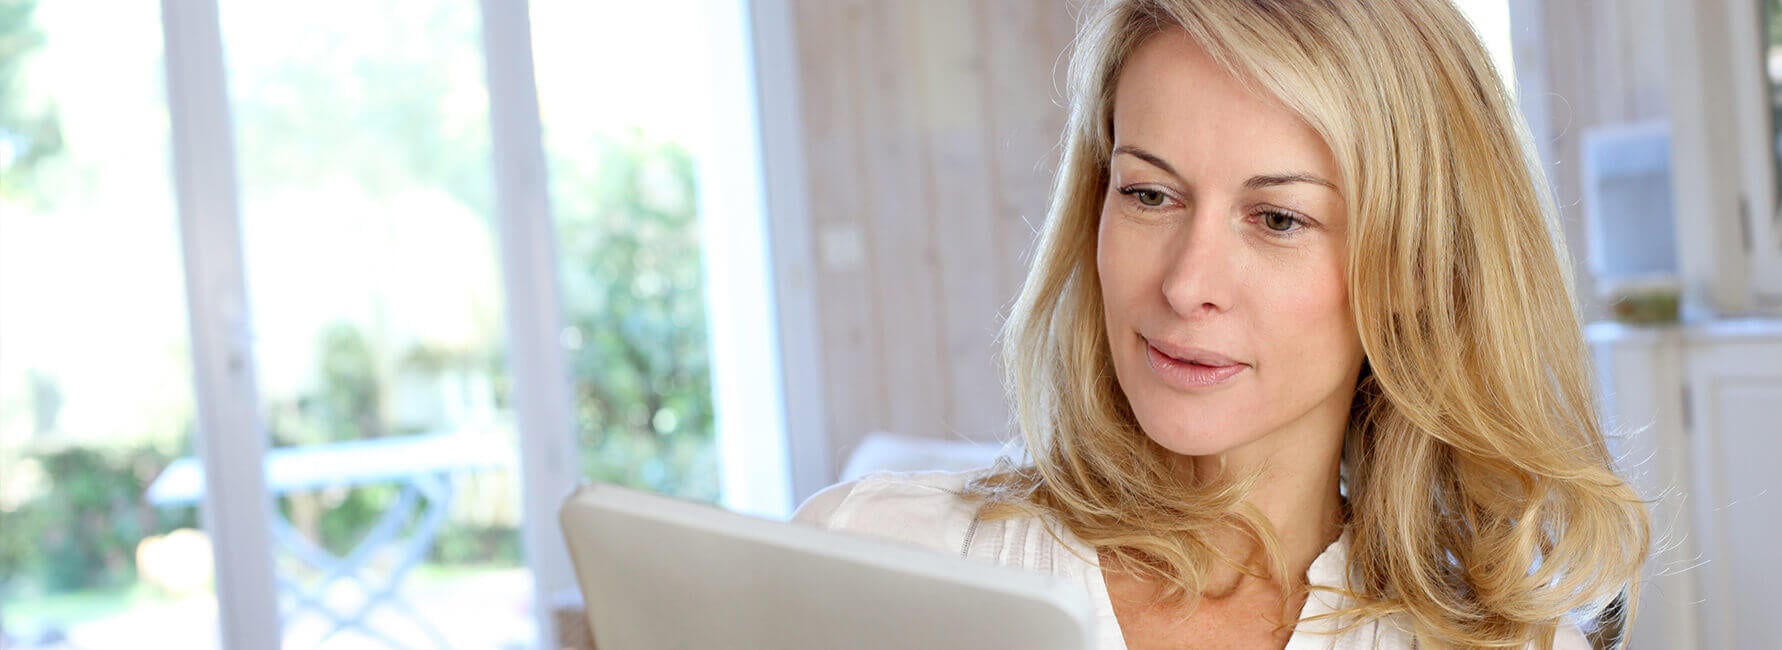 Een vrouw met blond haar leest op een tablet